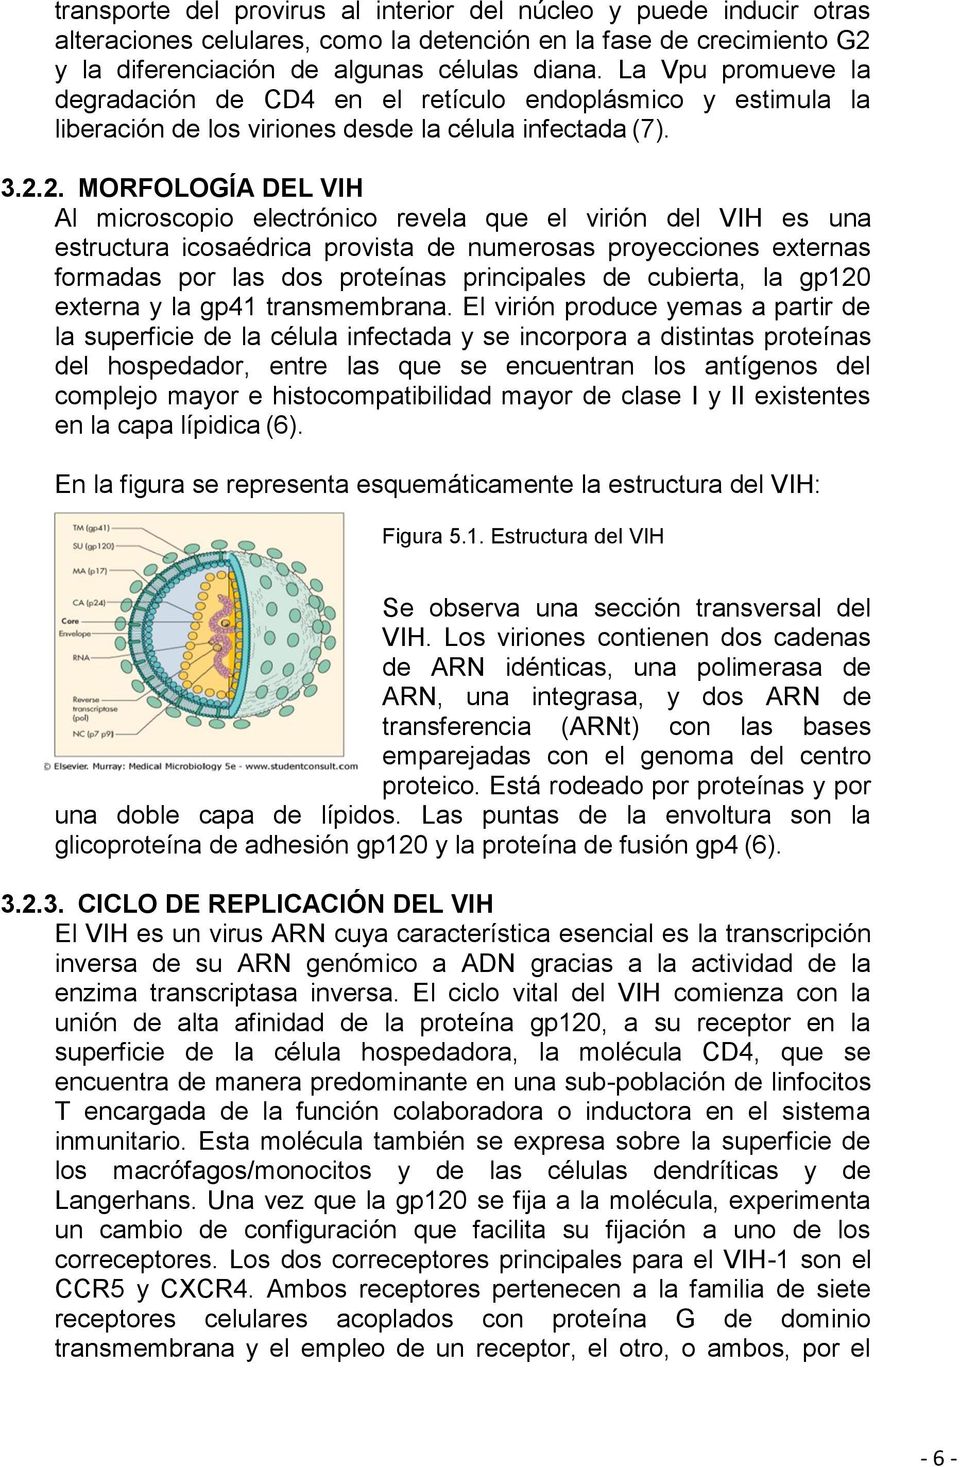 2. MORFOLOGÍA DEL VIH Al microscopio electrónico revela que el virión del VIH es una estructura icosaédrica provista de numerosas proyecciones externas formadas por las dos proteínas principales de